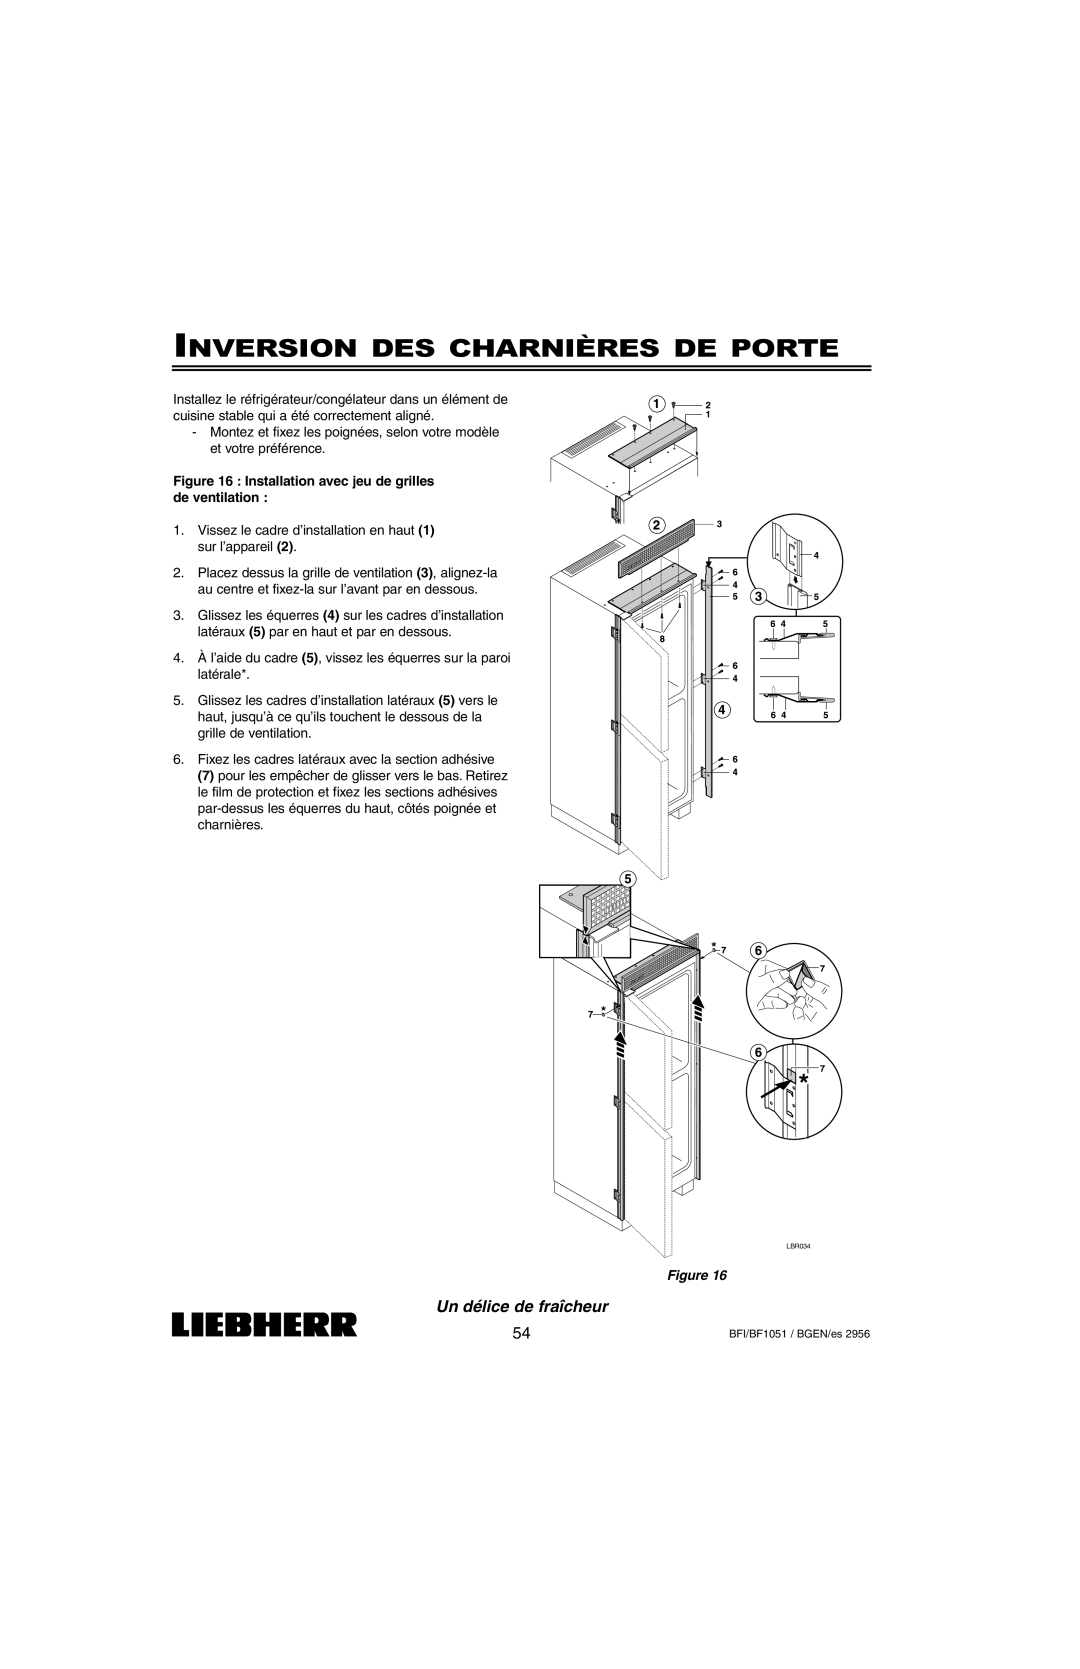 Liebherr BFI1051, BF1051 installation instructions Inversion Des Charnières De Porte, Un délice de fraîcheur, Figure 